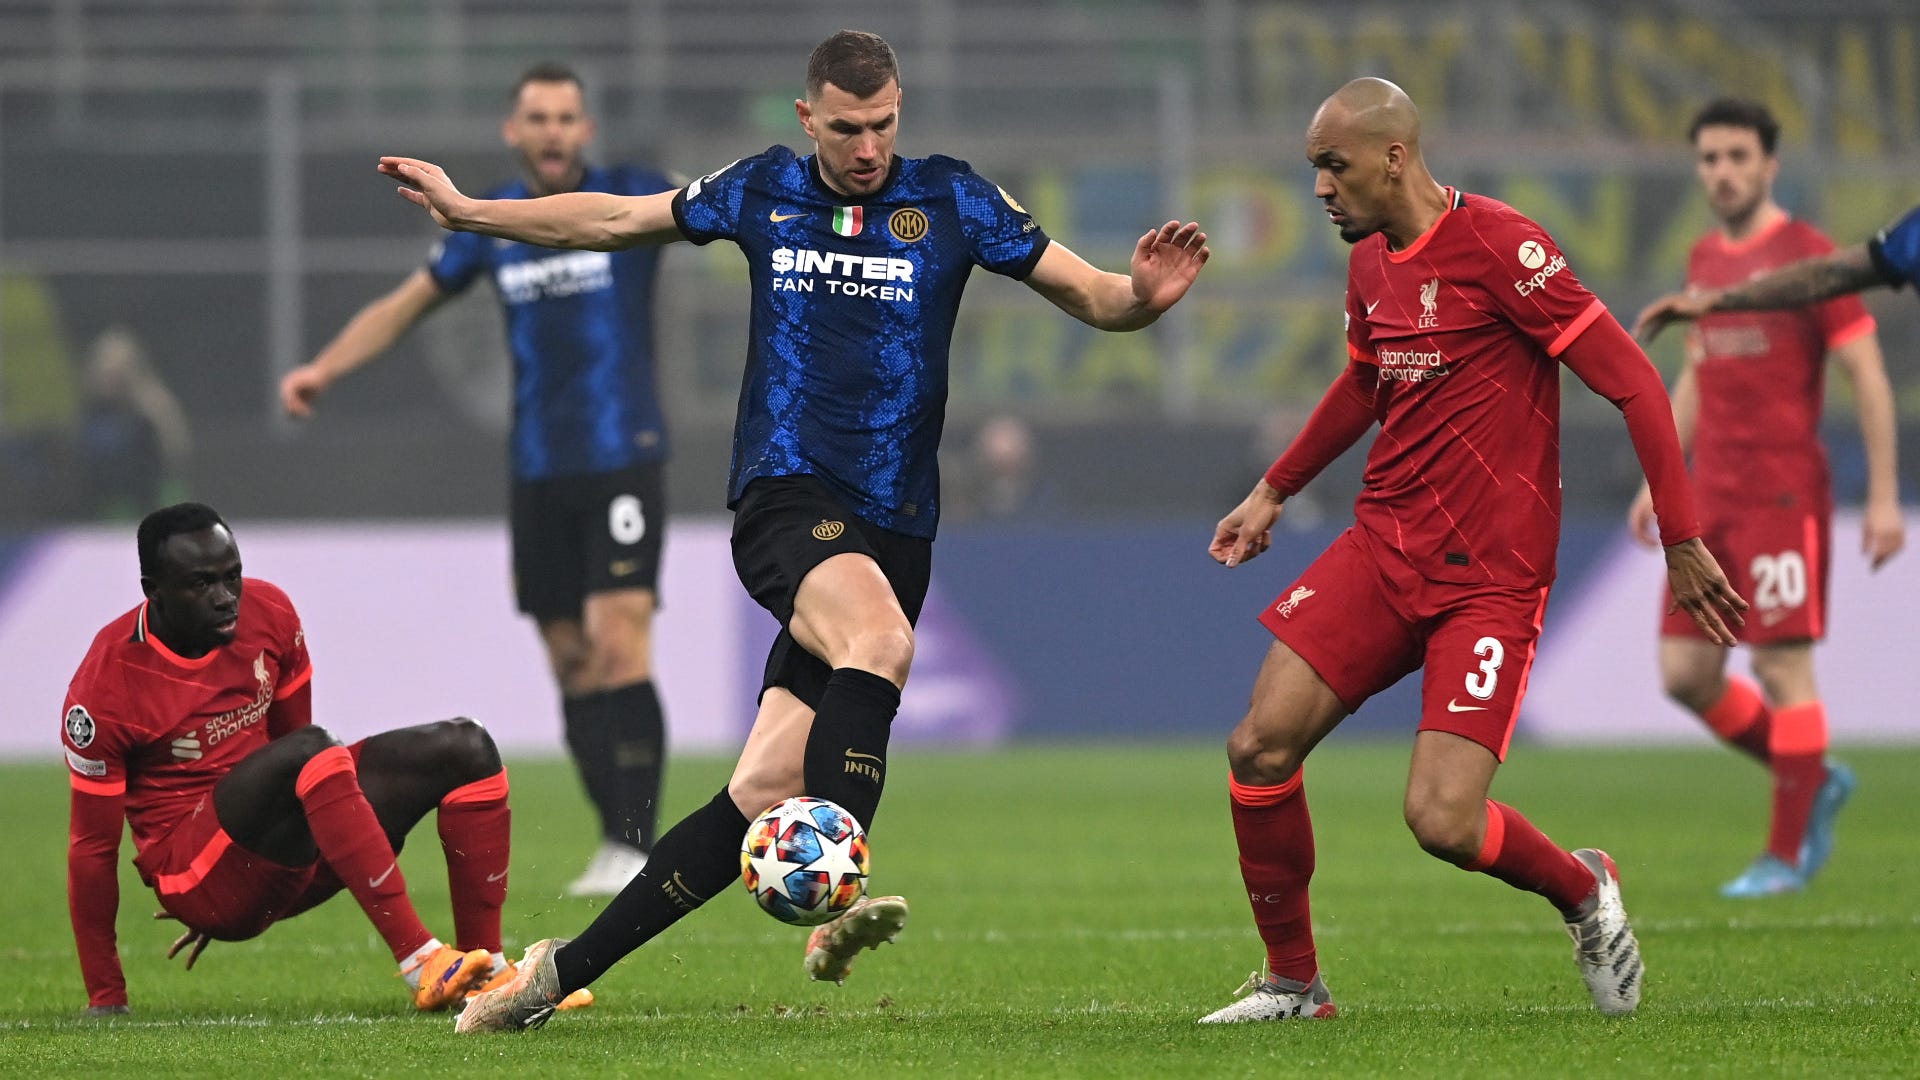 ¿Qué canal transmite el partido de Inter vs Liverpool